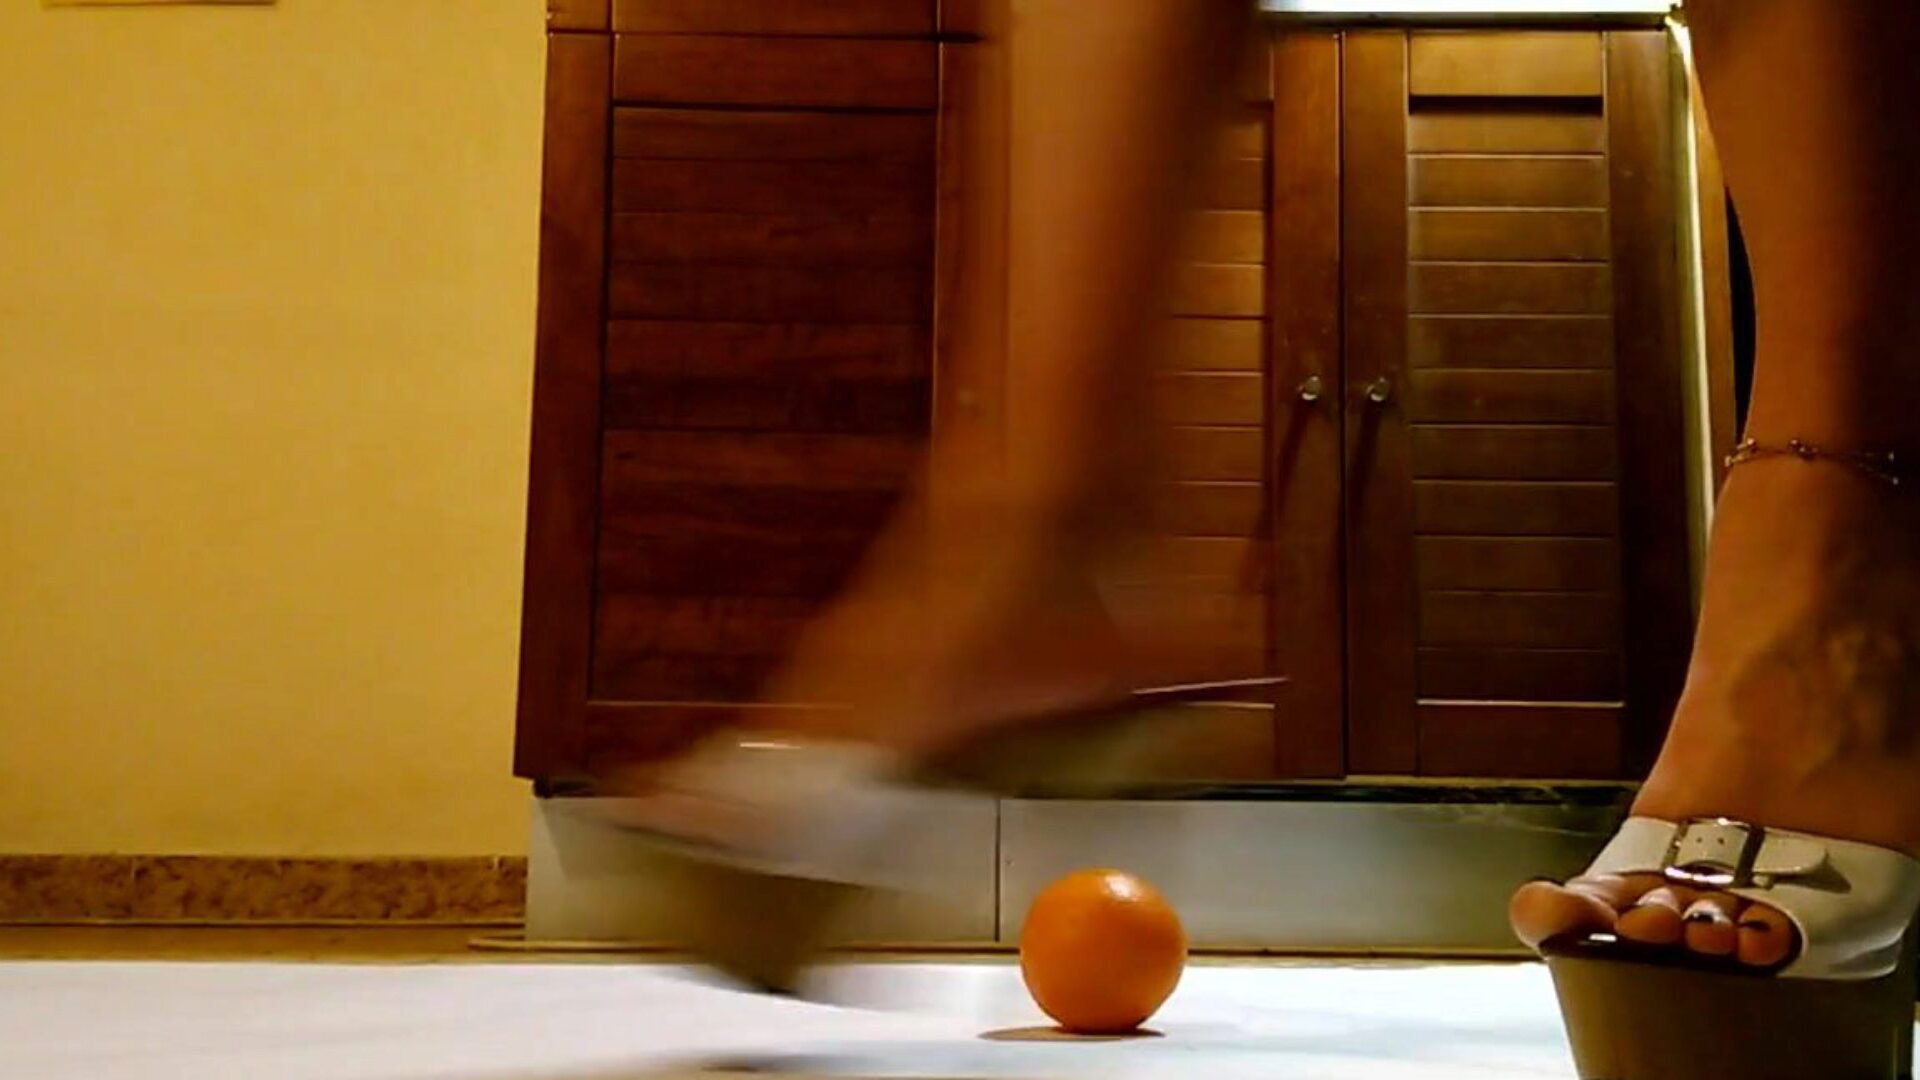 garçonete joga e soca laranja com sapatos de salto alto plataforma hawt garçonete se diverte e chuta laranja em sapatos de salto alto plataforma sexy